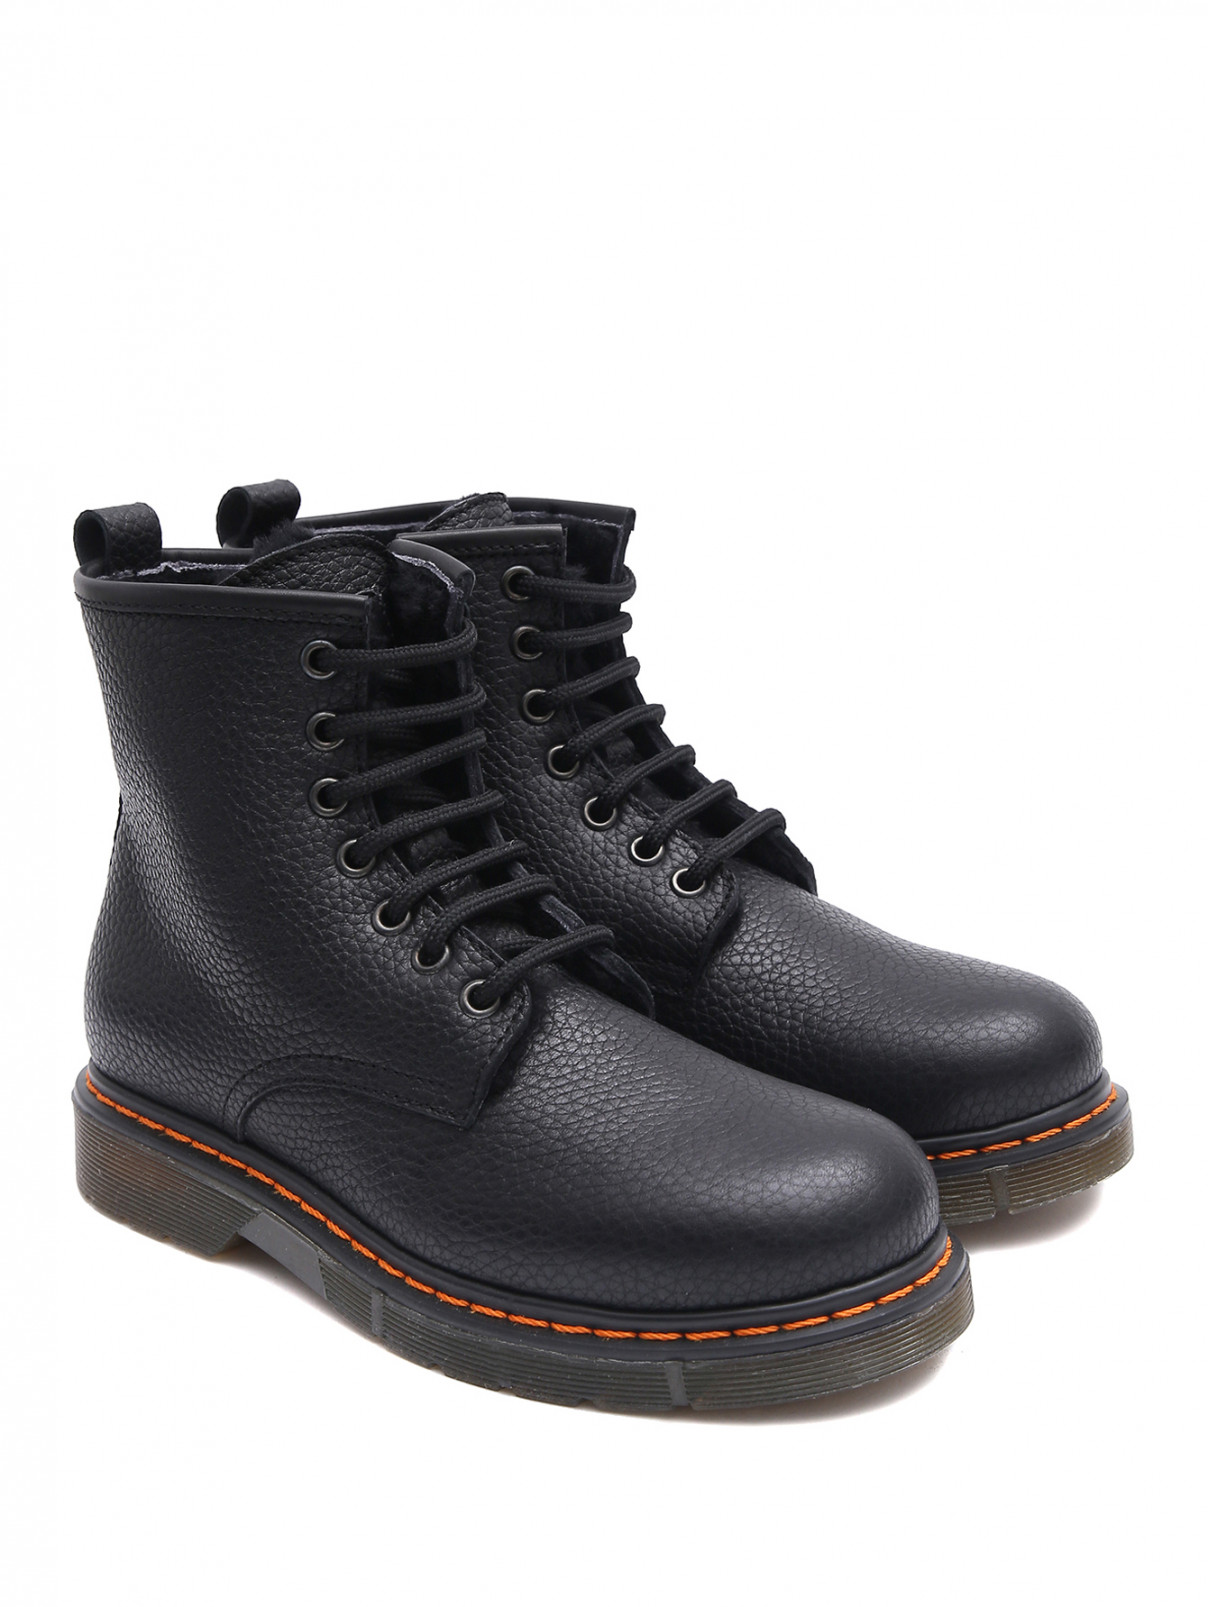 Кожаные ботинки с контрастной отстрочкой Gallucci  –  Общий вид  – Цвет:  Черный